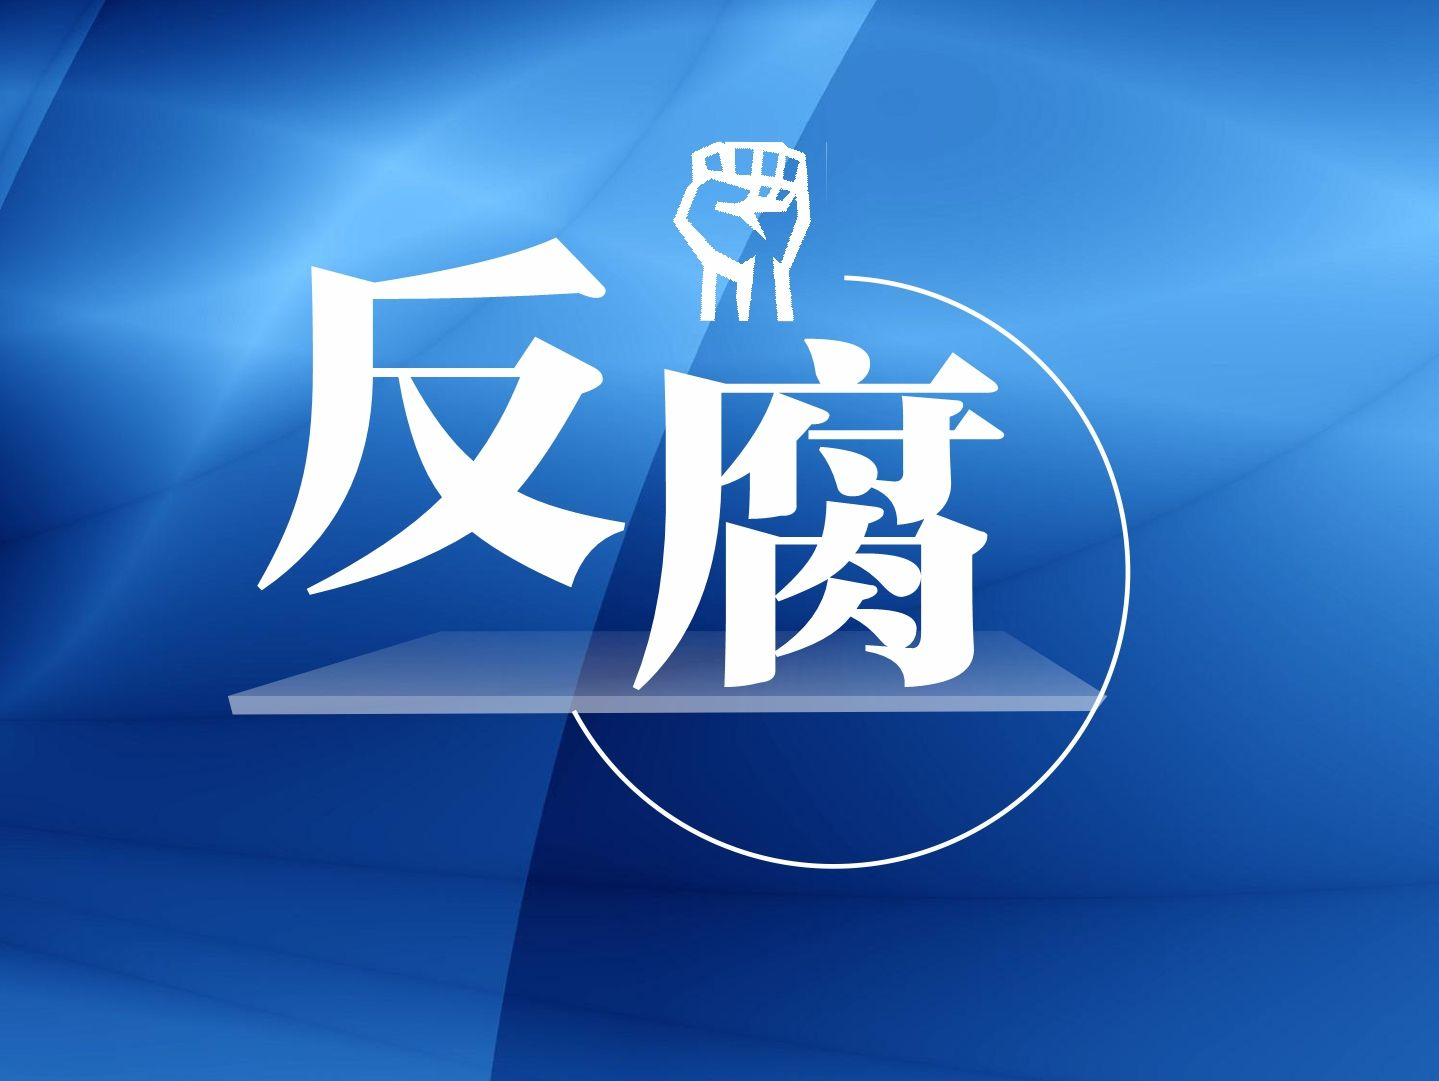 安阳钢铁集团有限责任公司原董事长李利剑接受审查调查